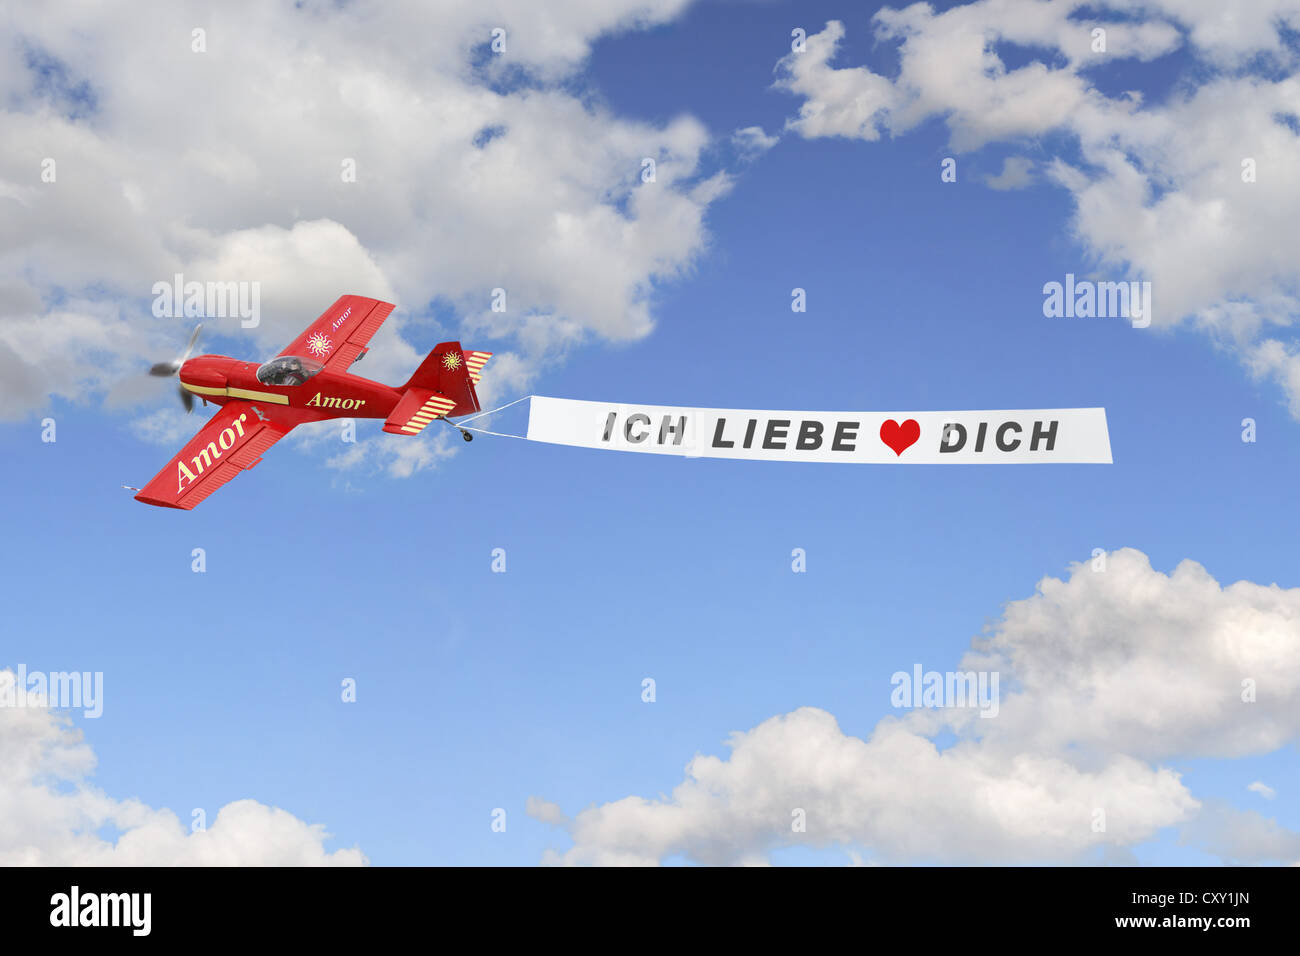 Flugzeug Am Himmel Zieht Eine Banner Mit Der Meldung Ich Liebe Dich Deutsch Denn Ich Dich Abbildung Liebe Stockfotografie Alamy